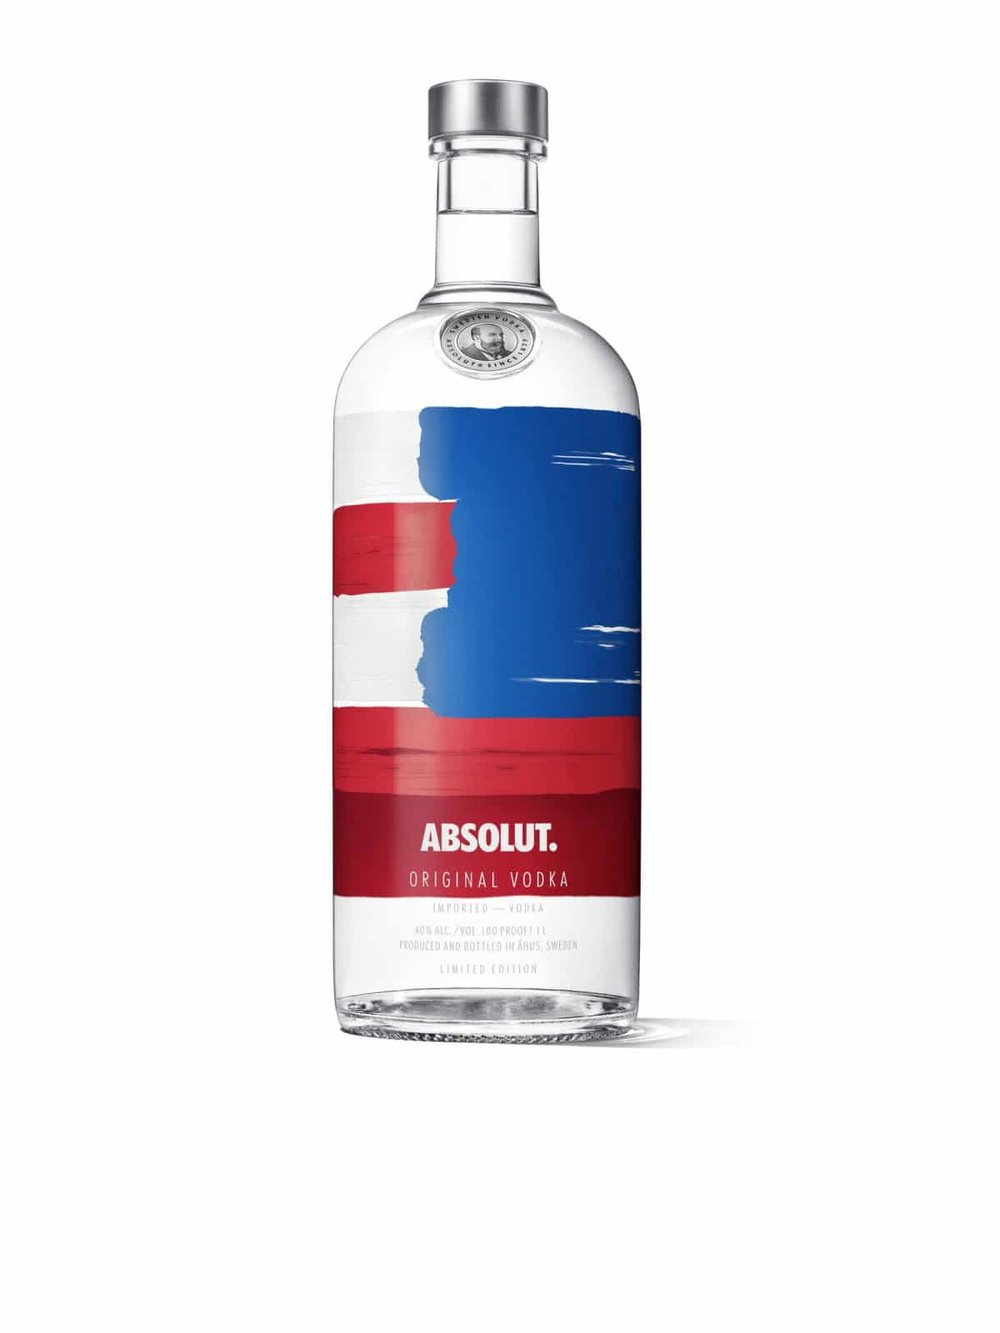 Absolut_America_Bottle_Image.jpg